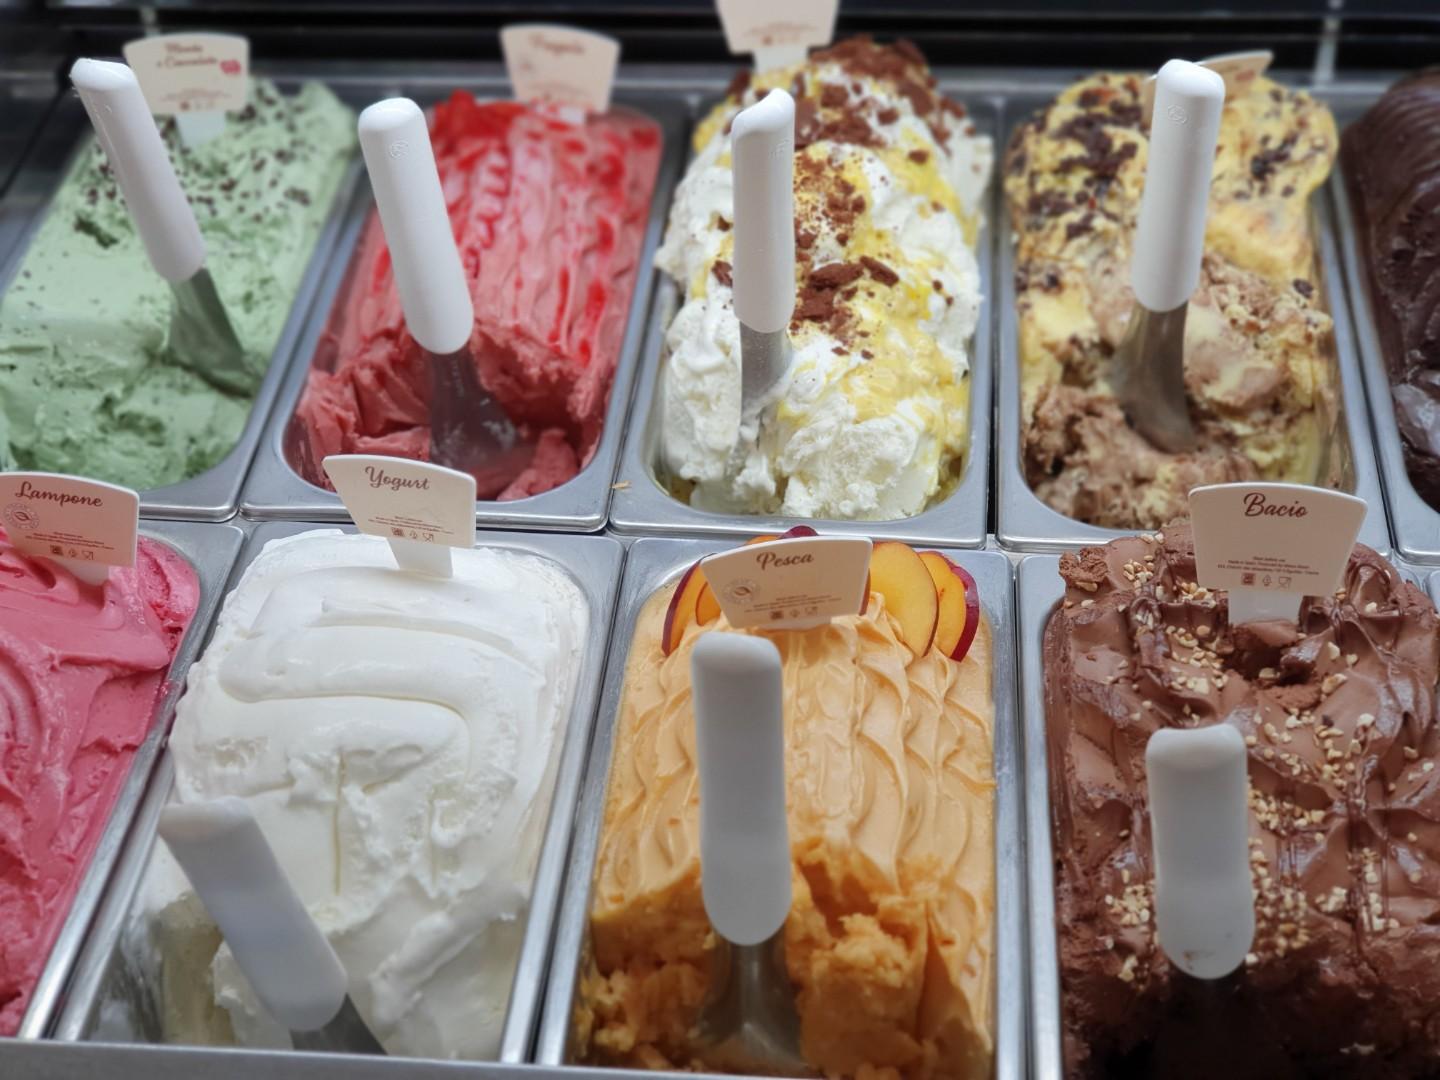 Ice-cream parlor for sale in Viareggio (LU)